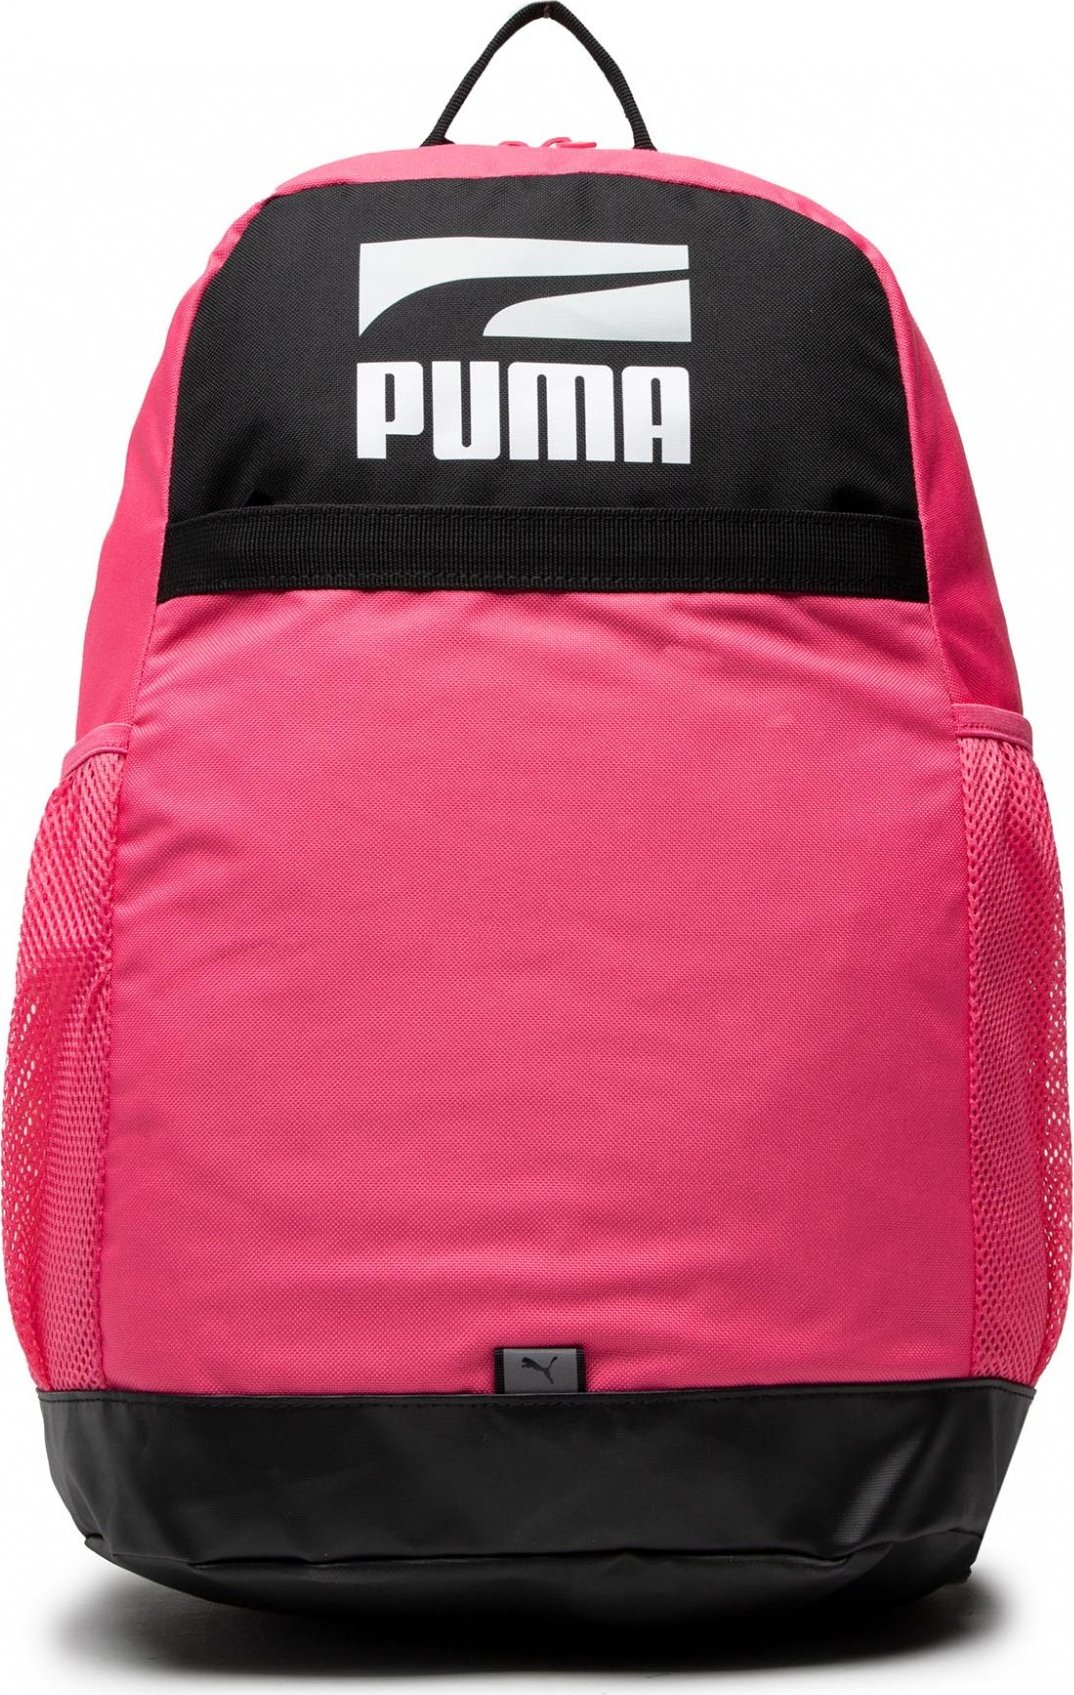 Puma Plus Backpack II 078391 11